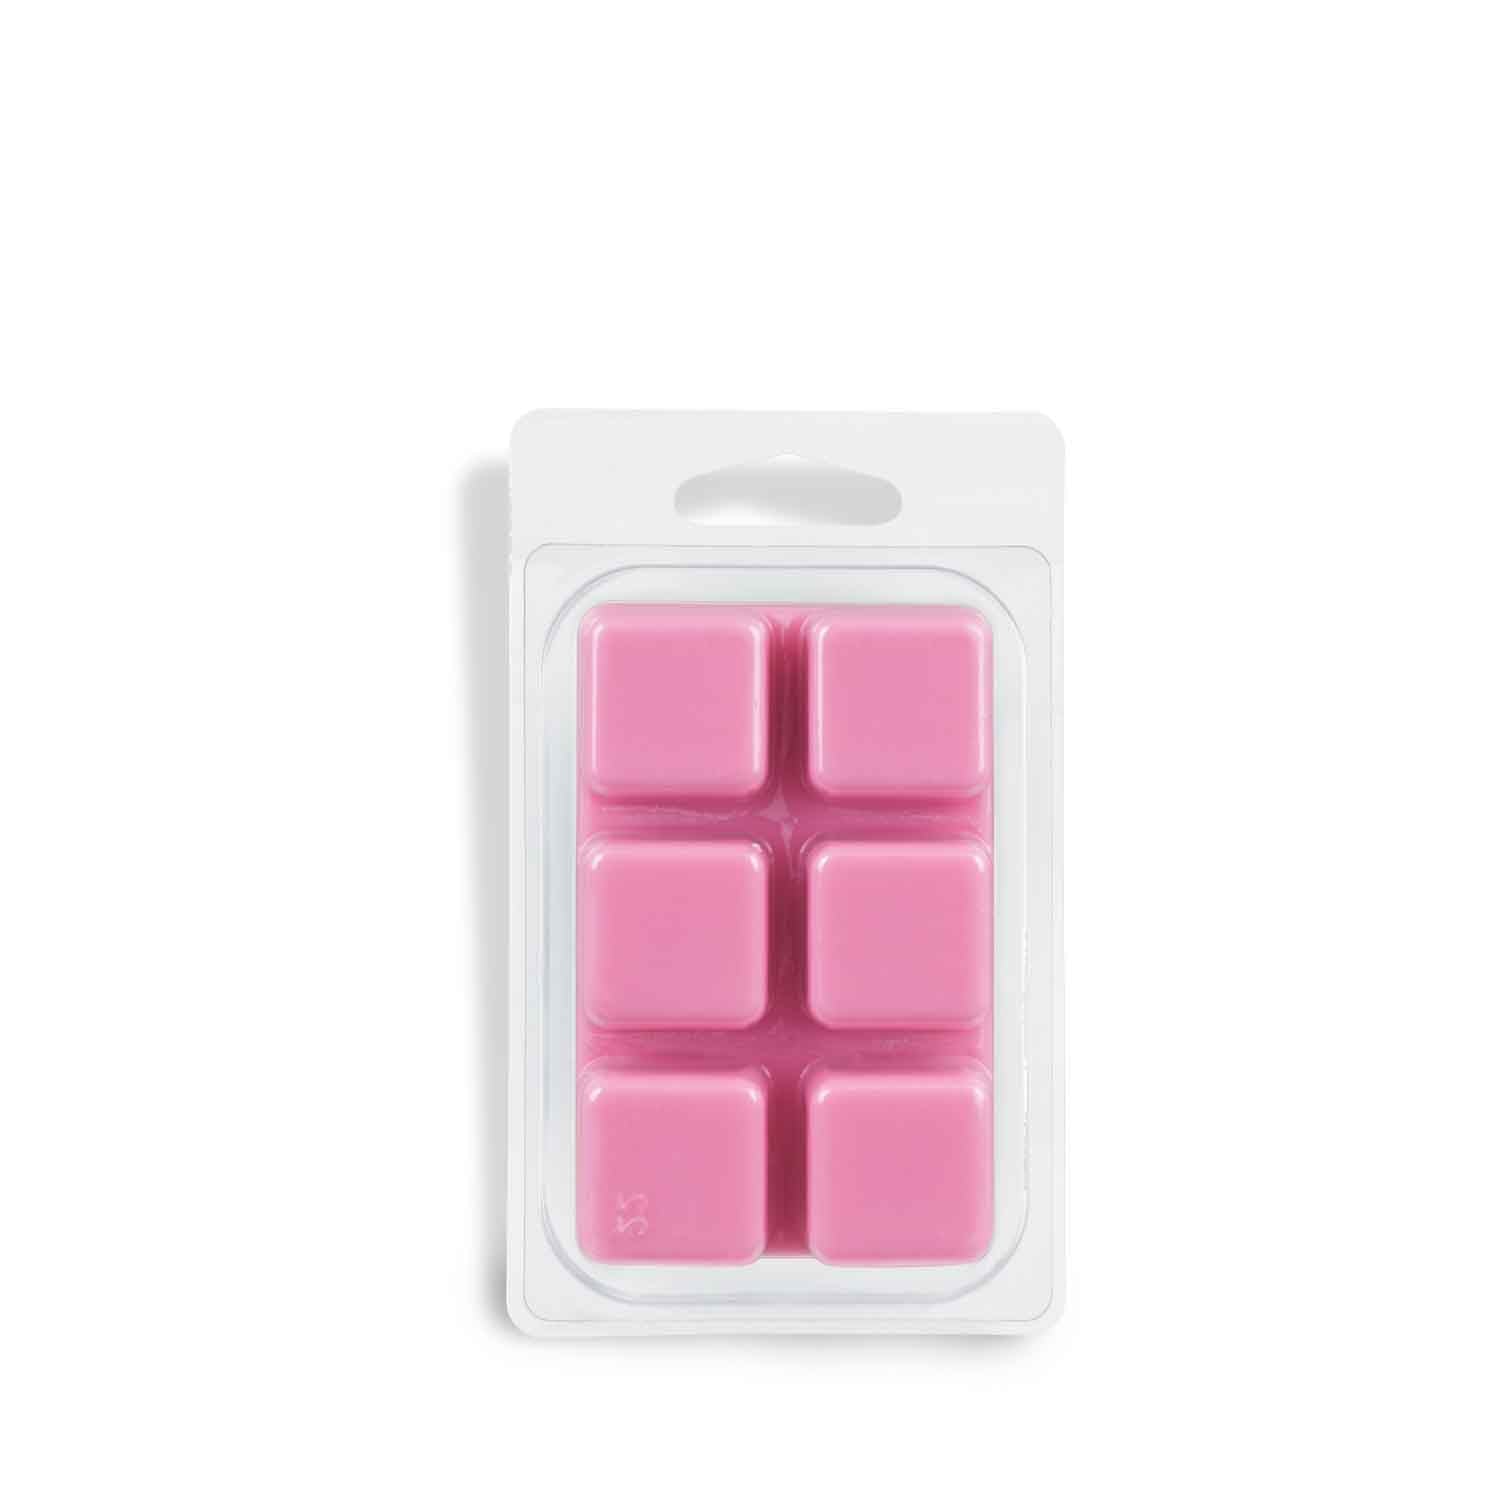 A pink wax melt tart bar called "Peony Blossom"